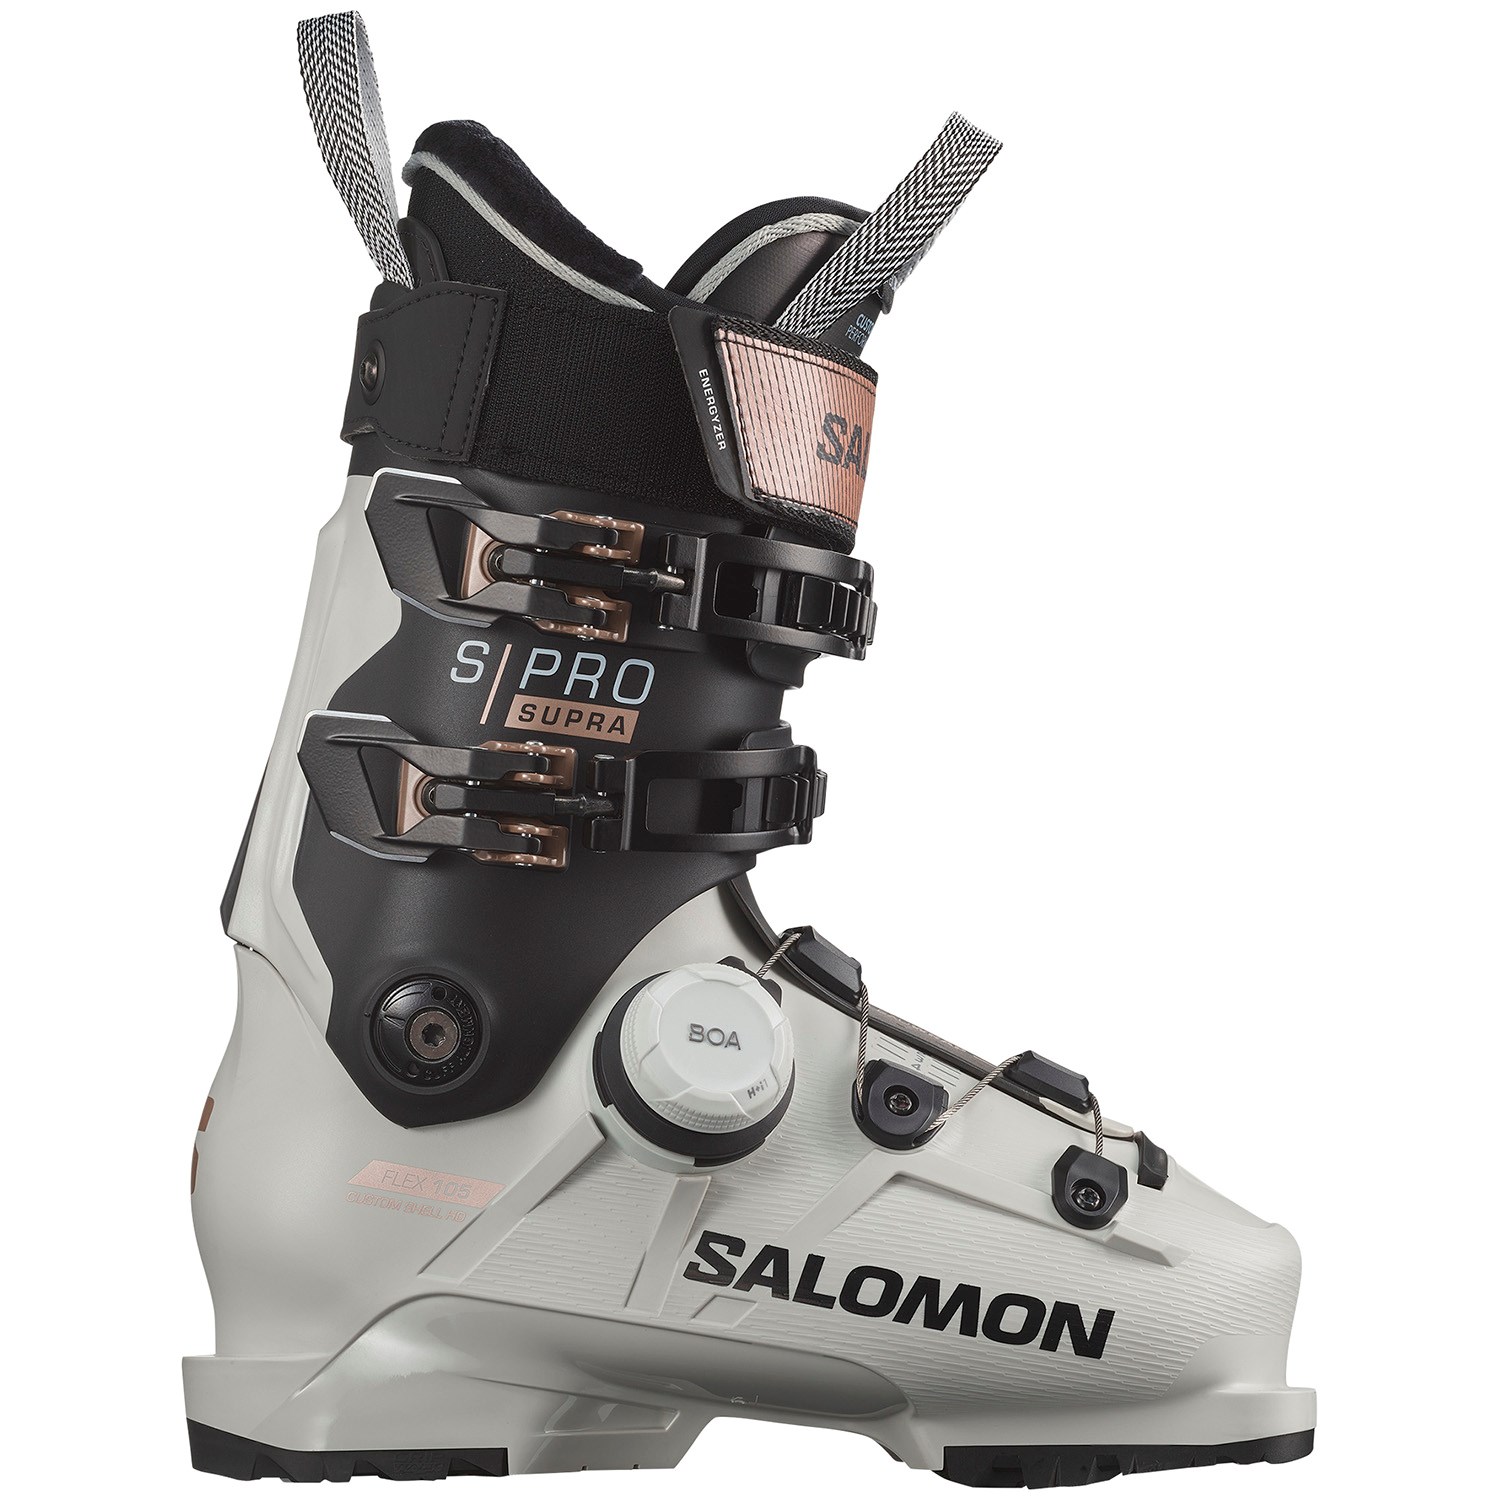 Лыжные ботинки Salomon S/Pro Supra BOA 105, синий лыжные ботинки s pro supra boa 105 gw 2024 женские salomon цвет rose shadow black beluga